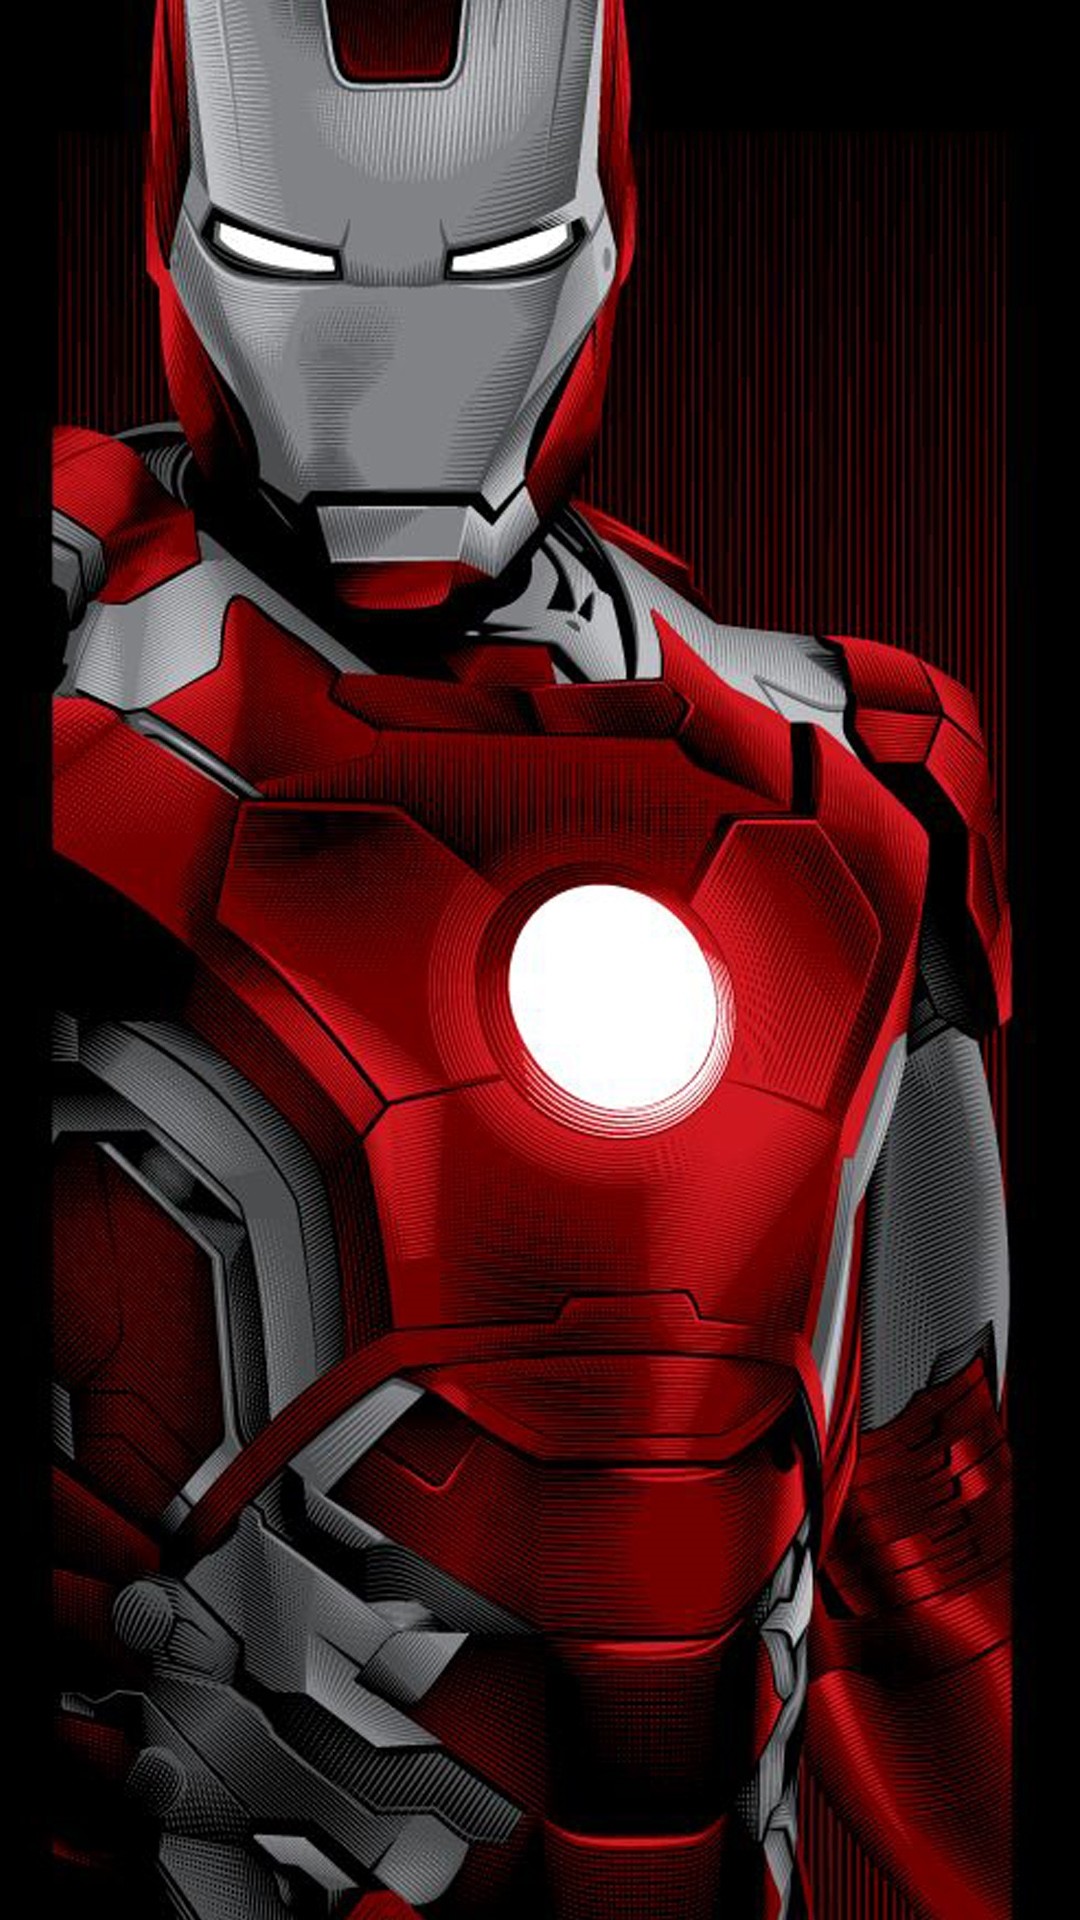 1080x1920 ... Iron Man Iphone Wallpaper Iron Man iPhone Wallpapers ...